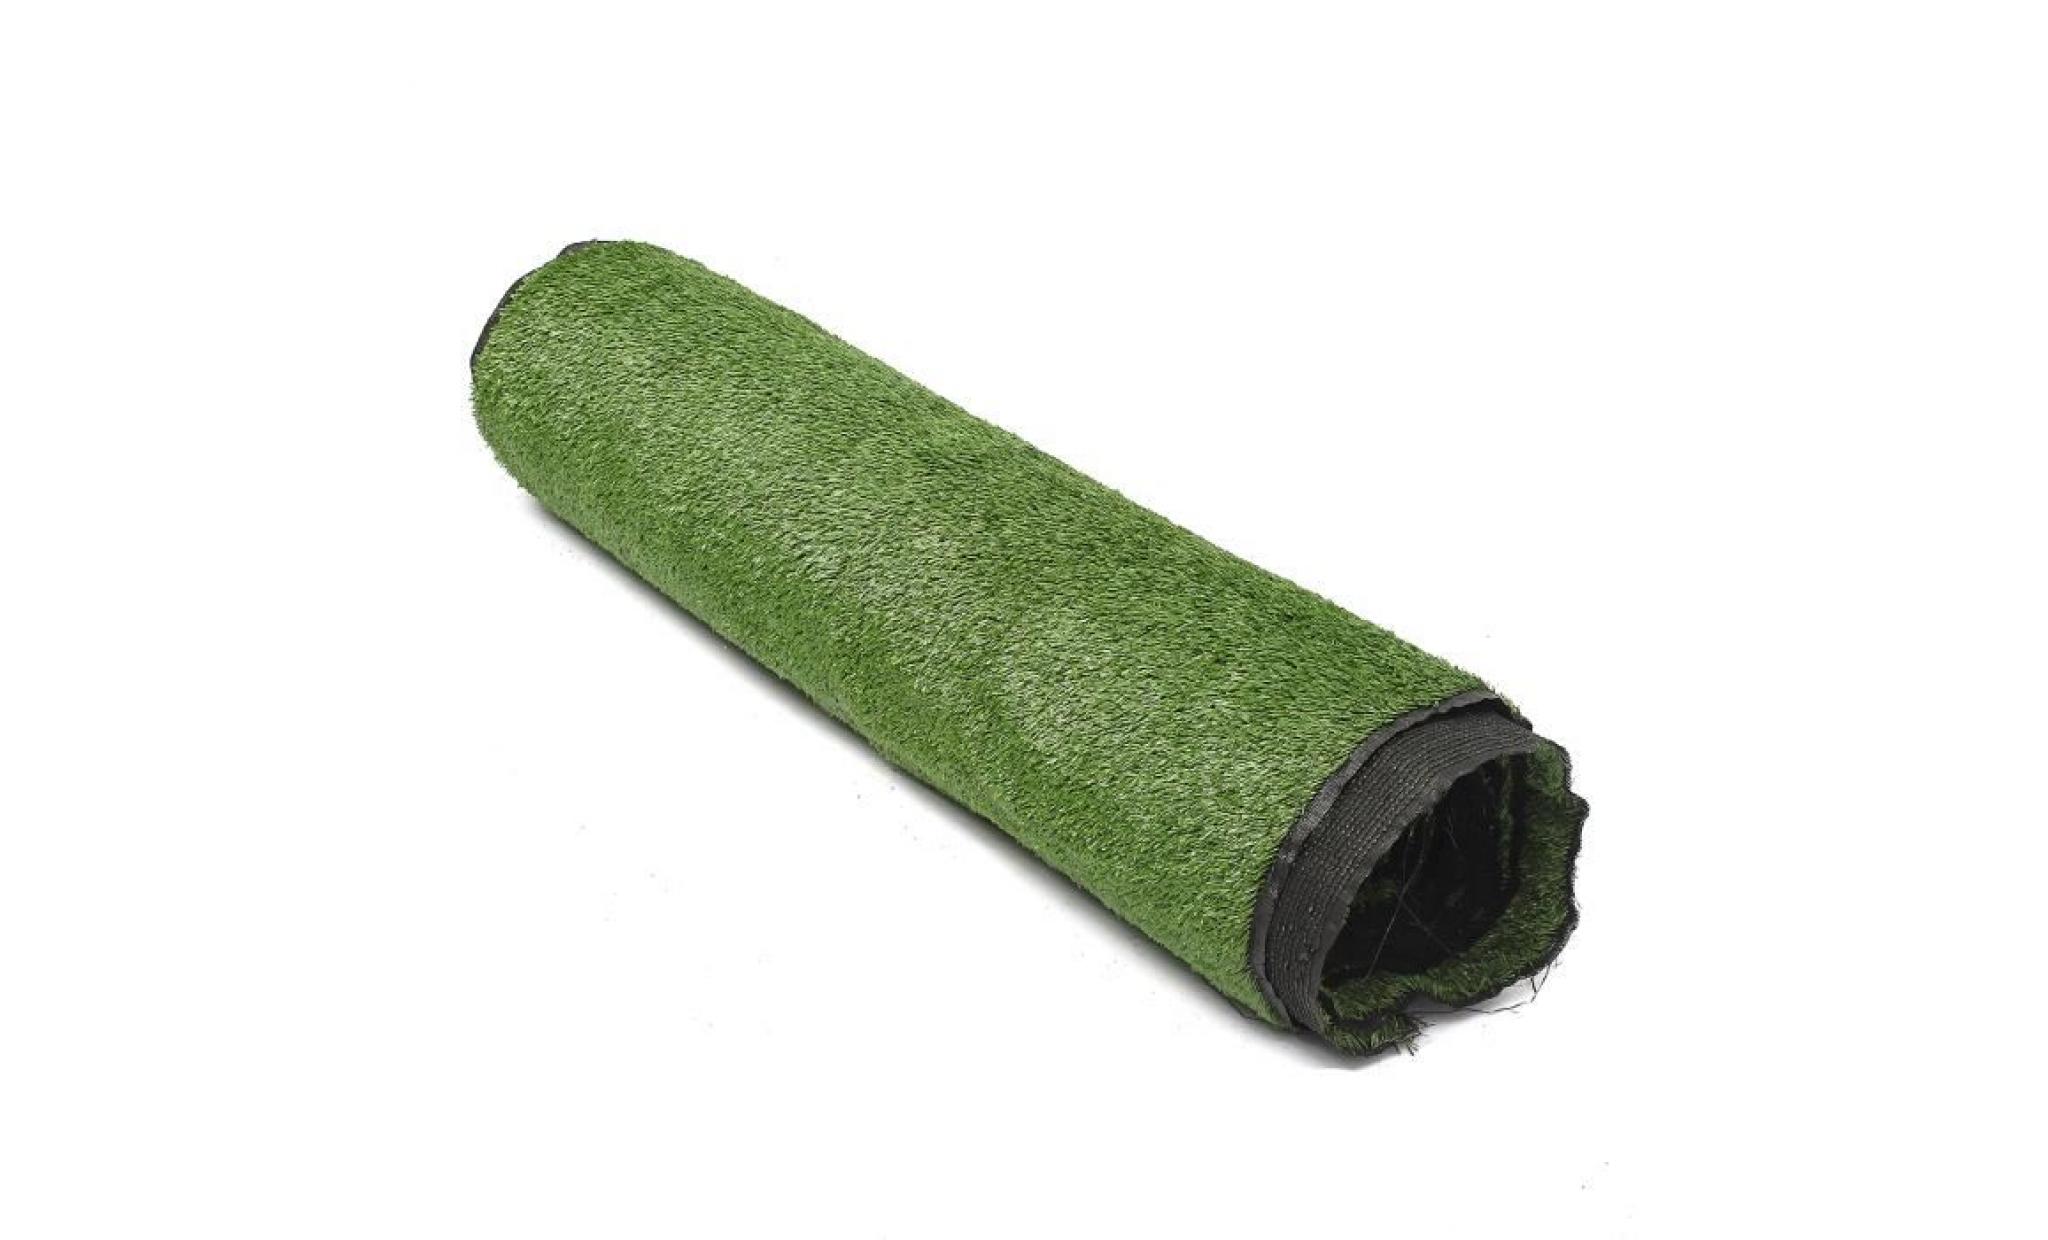 tempsa 1.5cm rouleau tapis de gazon artificielle plastique jardin vert 1m*10m pas cher